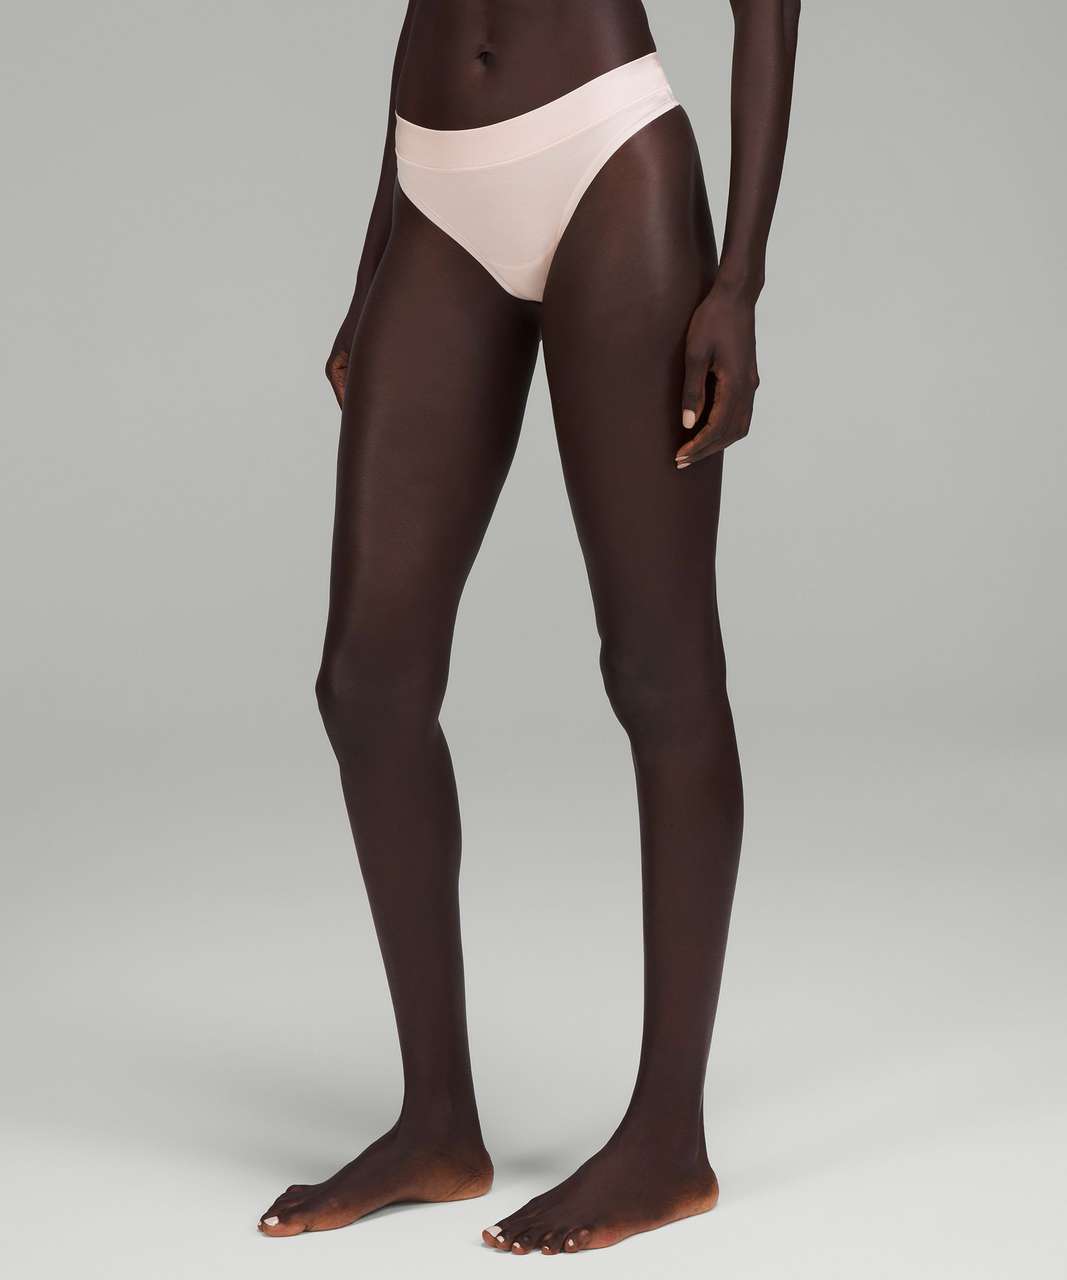 Lululemon UnderEase Mid-Rise Thong Underwear 3 Pack - Black / Dew Pink /  Warped Grain Alpine White Black - lulu fanatics